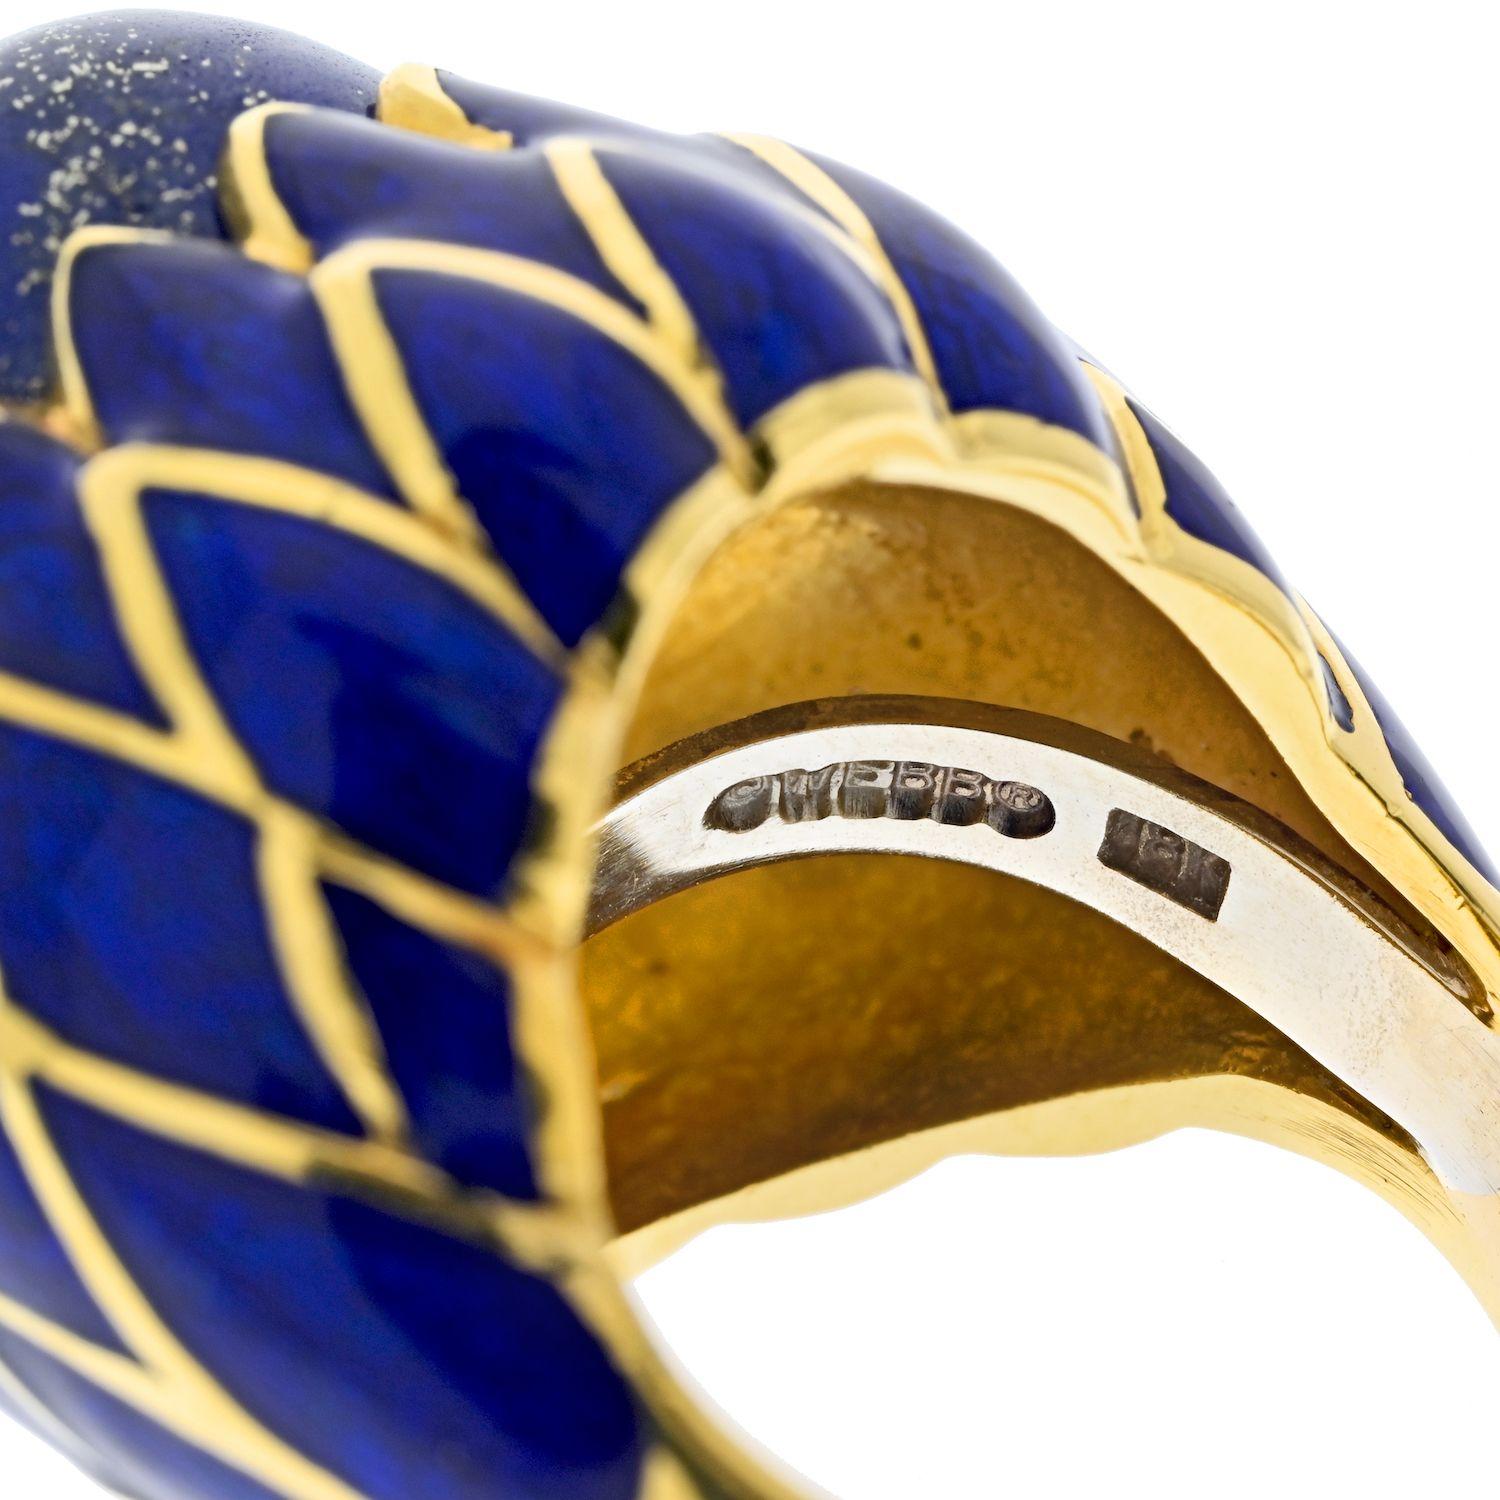 Le lapis-lazuli est très prisé depuis des siècles en raison de sa couleur bleue intense et de sa rareté. Il a été utilisé dans la joaillerie fine pour son apparence étonnante et sa capacité à ajouter une touche de luxe et de sophistication à